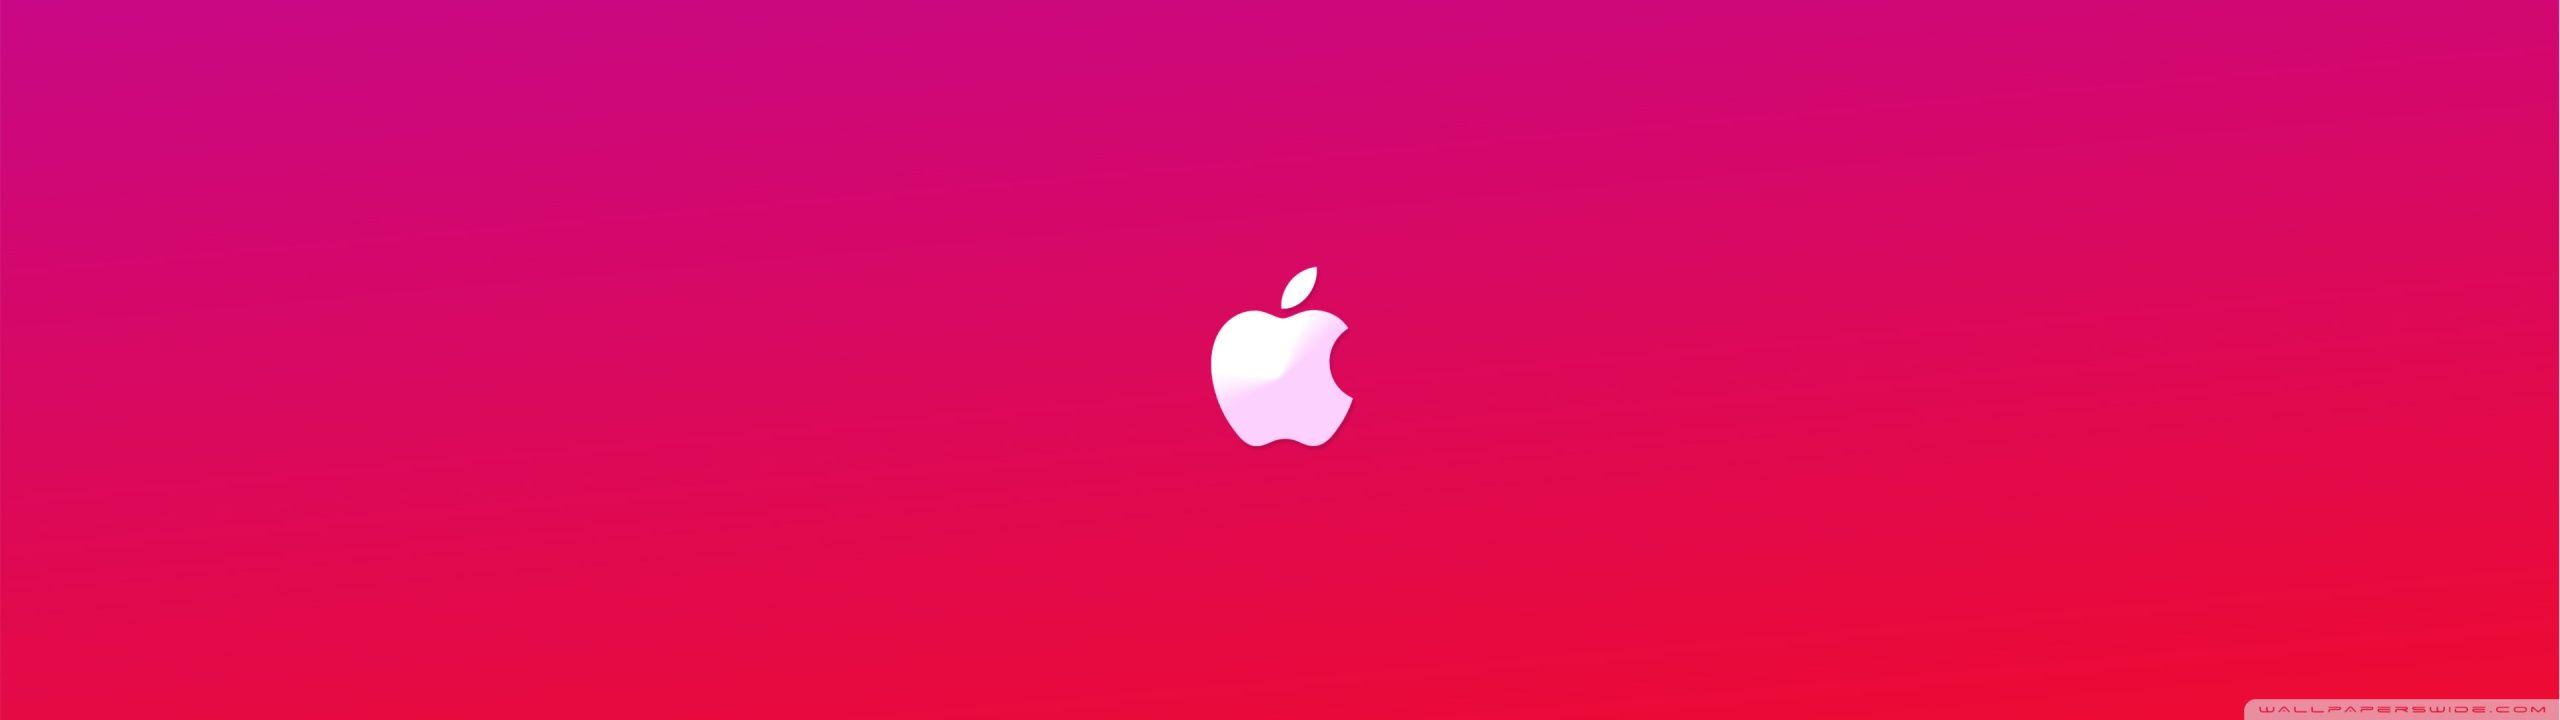 Simple Pink MacBook Wallpapers - Top Free Simple Pink MacBook ...